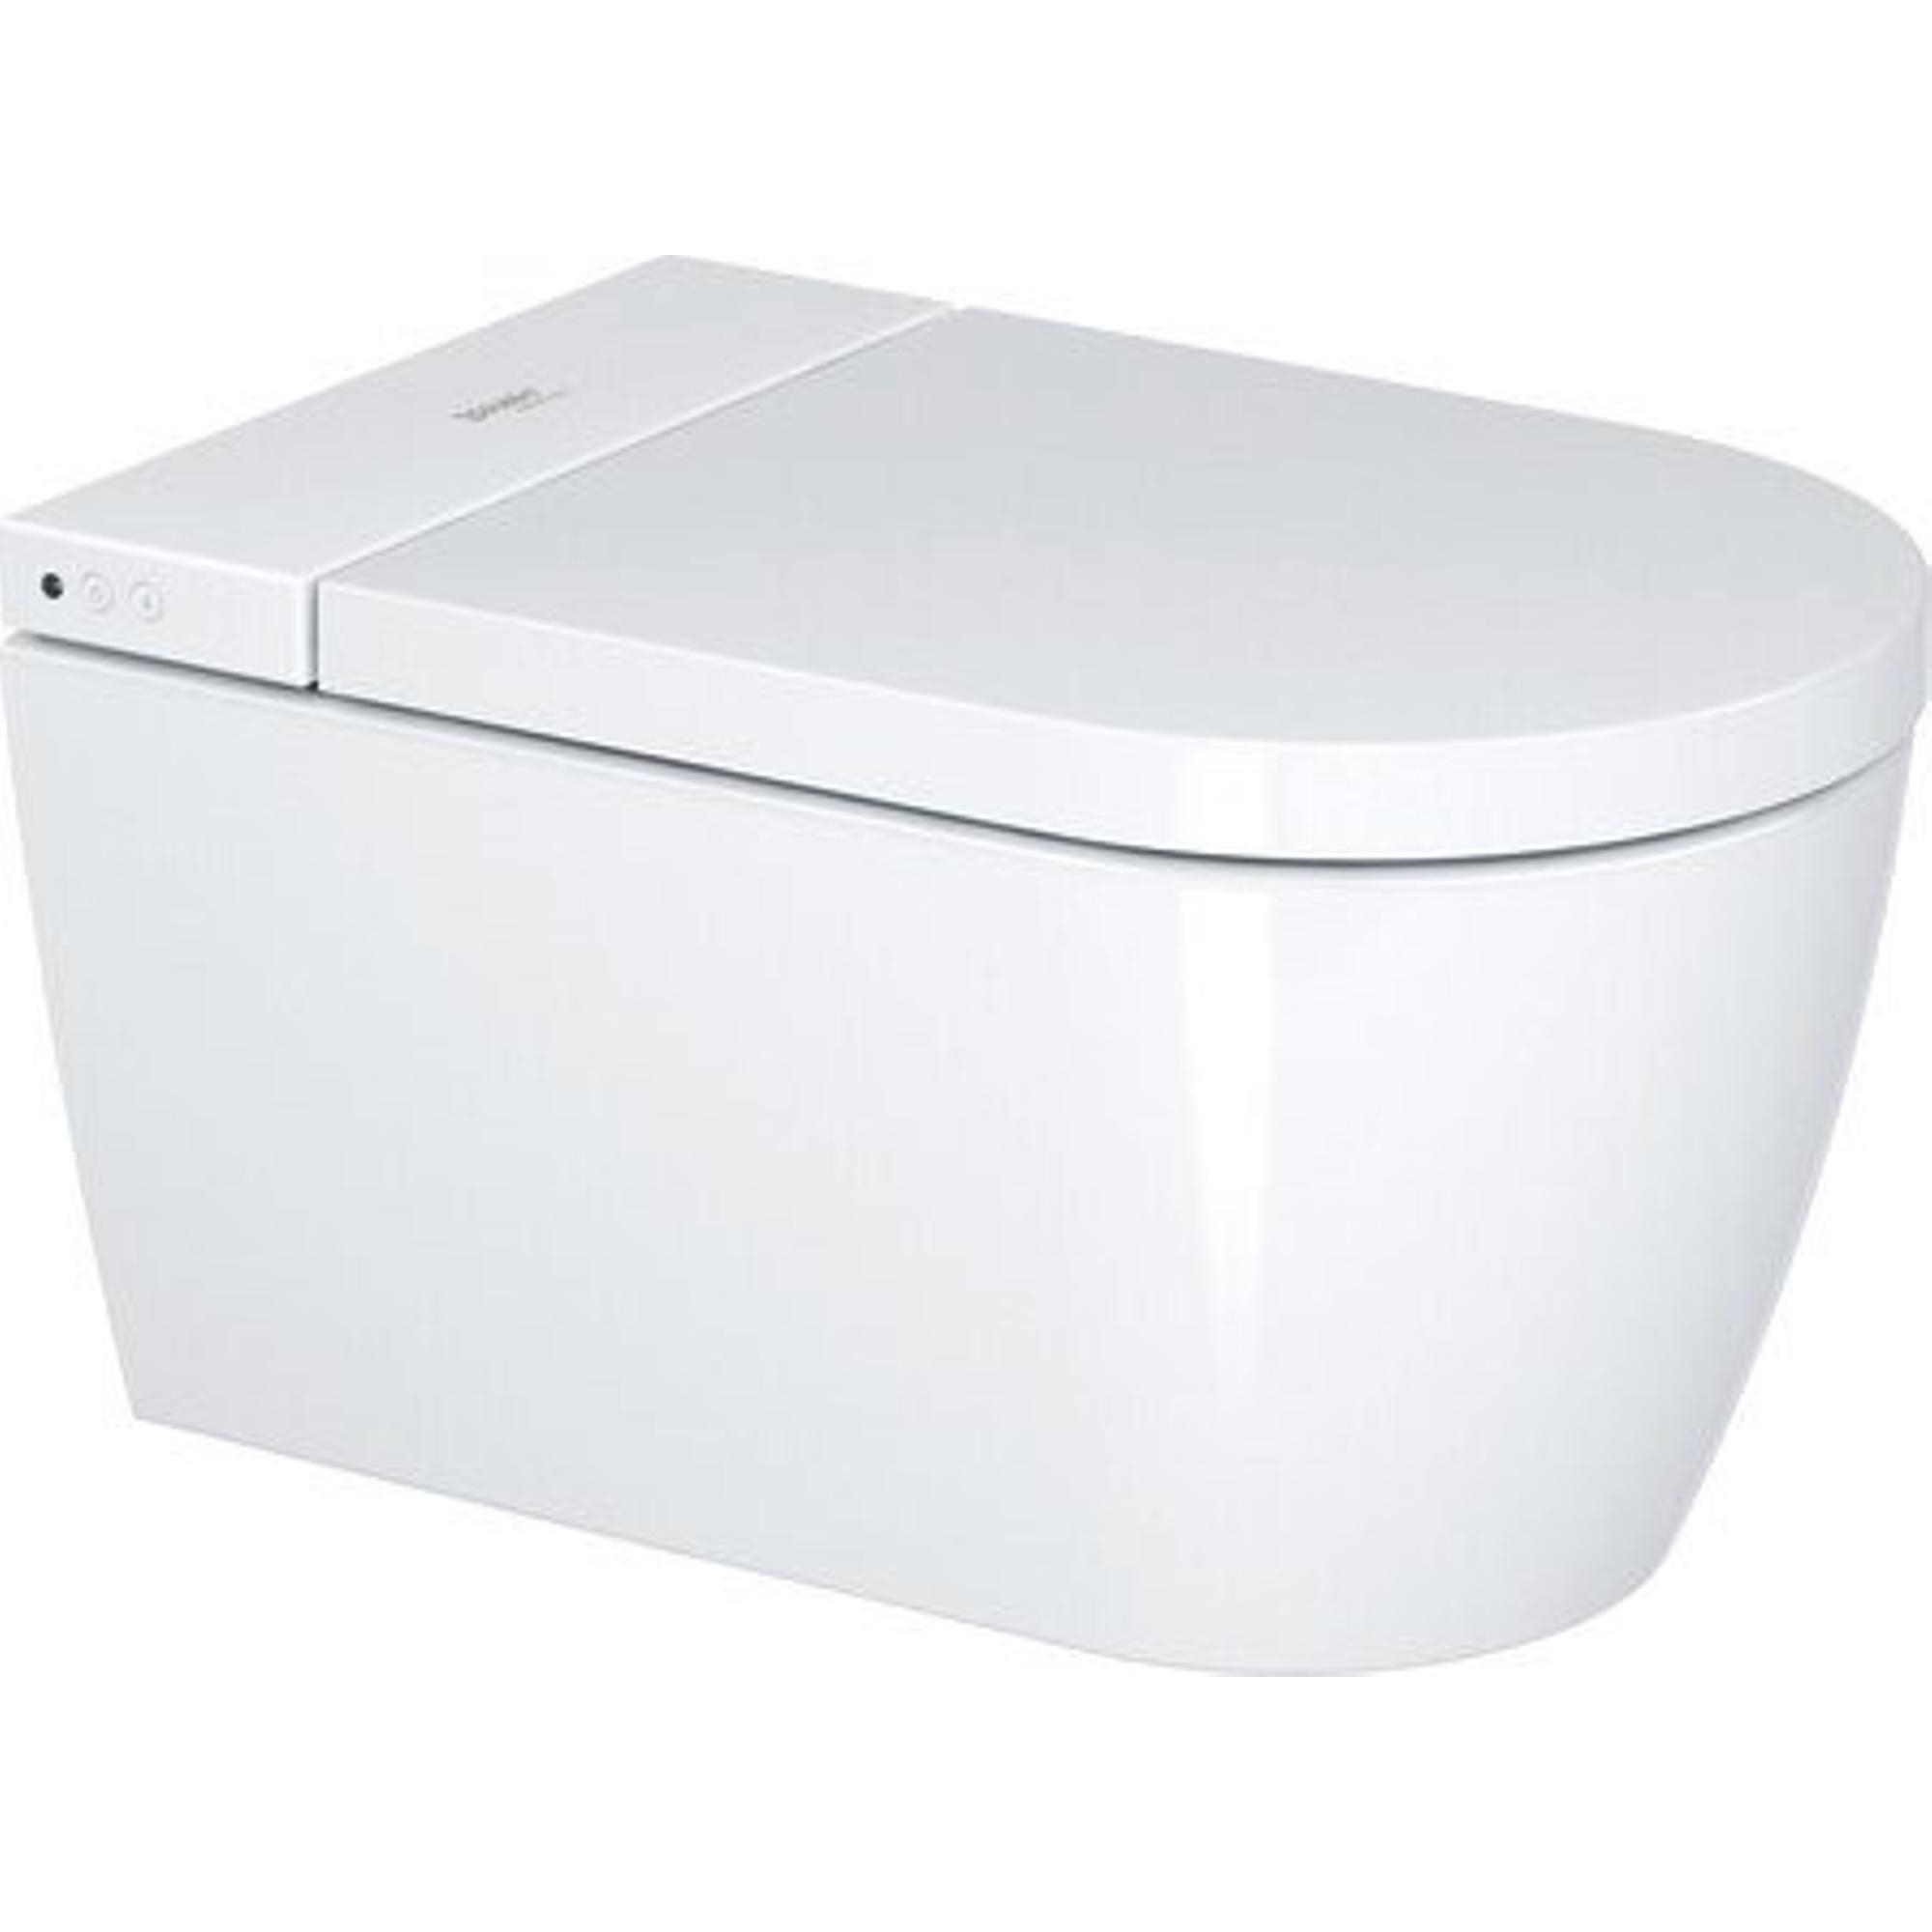 Duravit Sensowash starck f lite WC suspendu japonais low flush 37.8x57.5cm  avec siège wc et couvercle blanc - 650001012004310 